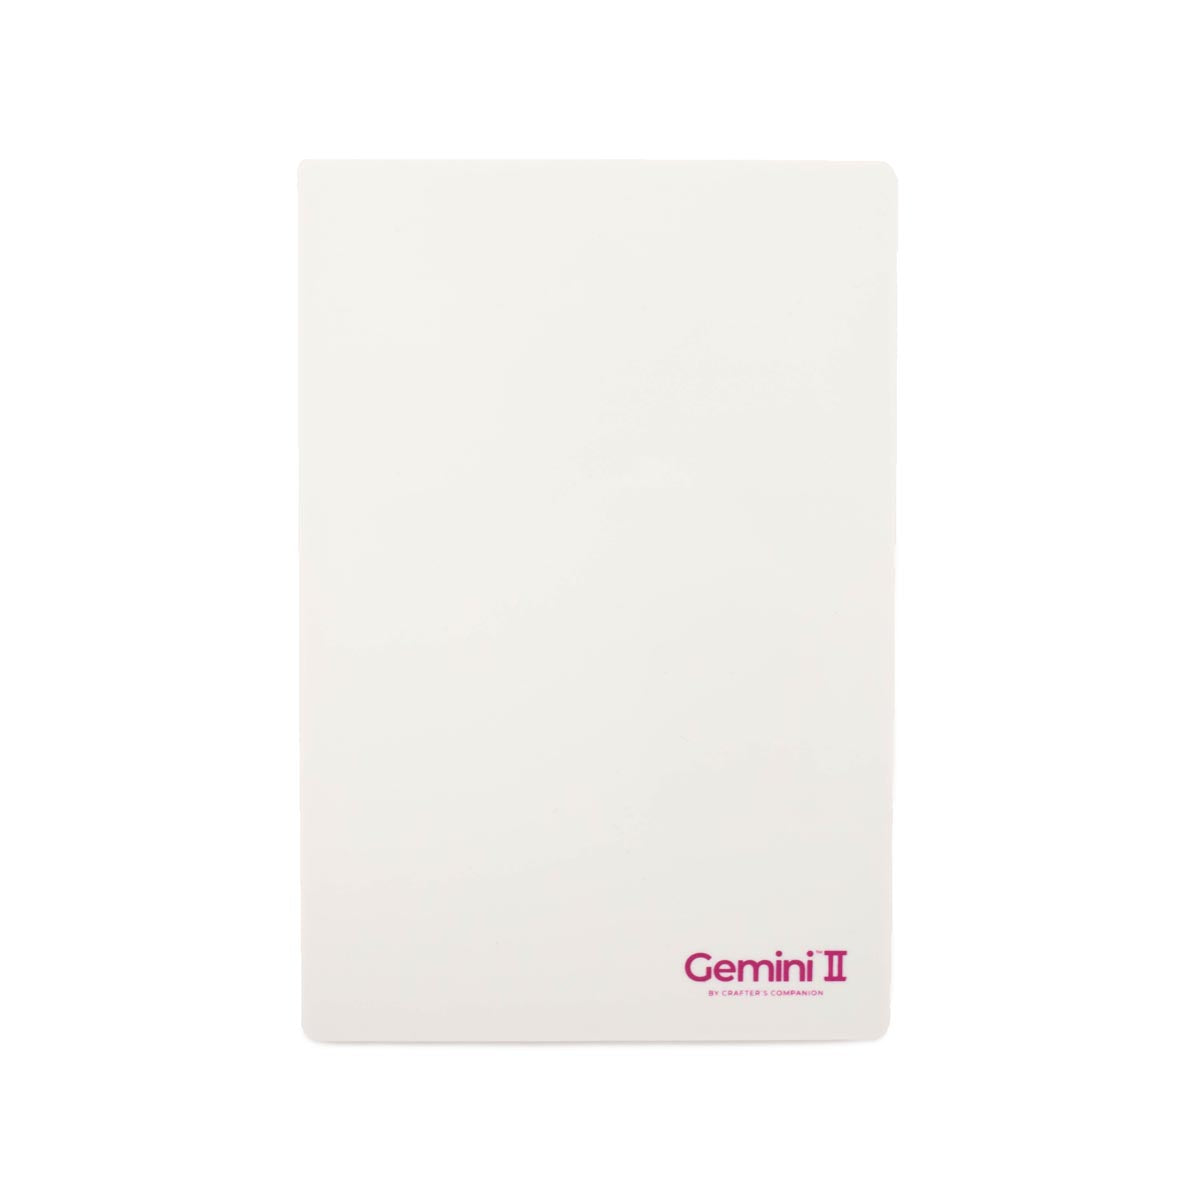 Crafter's Companion - Gemini II Accessories - Plastic Shim 9 "X12.5"